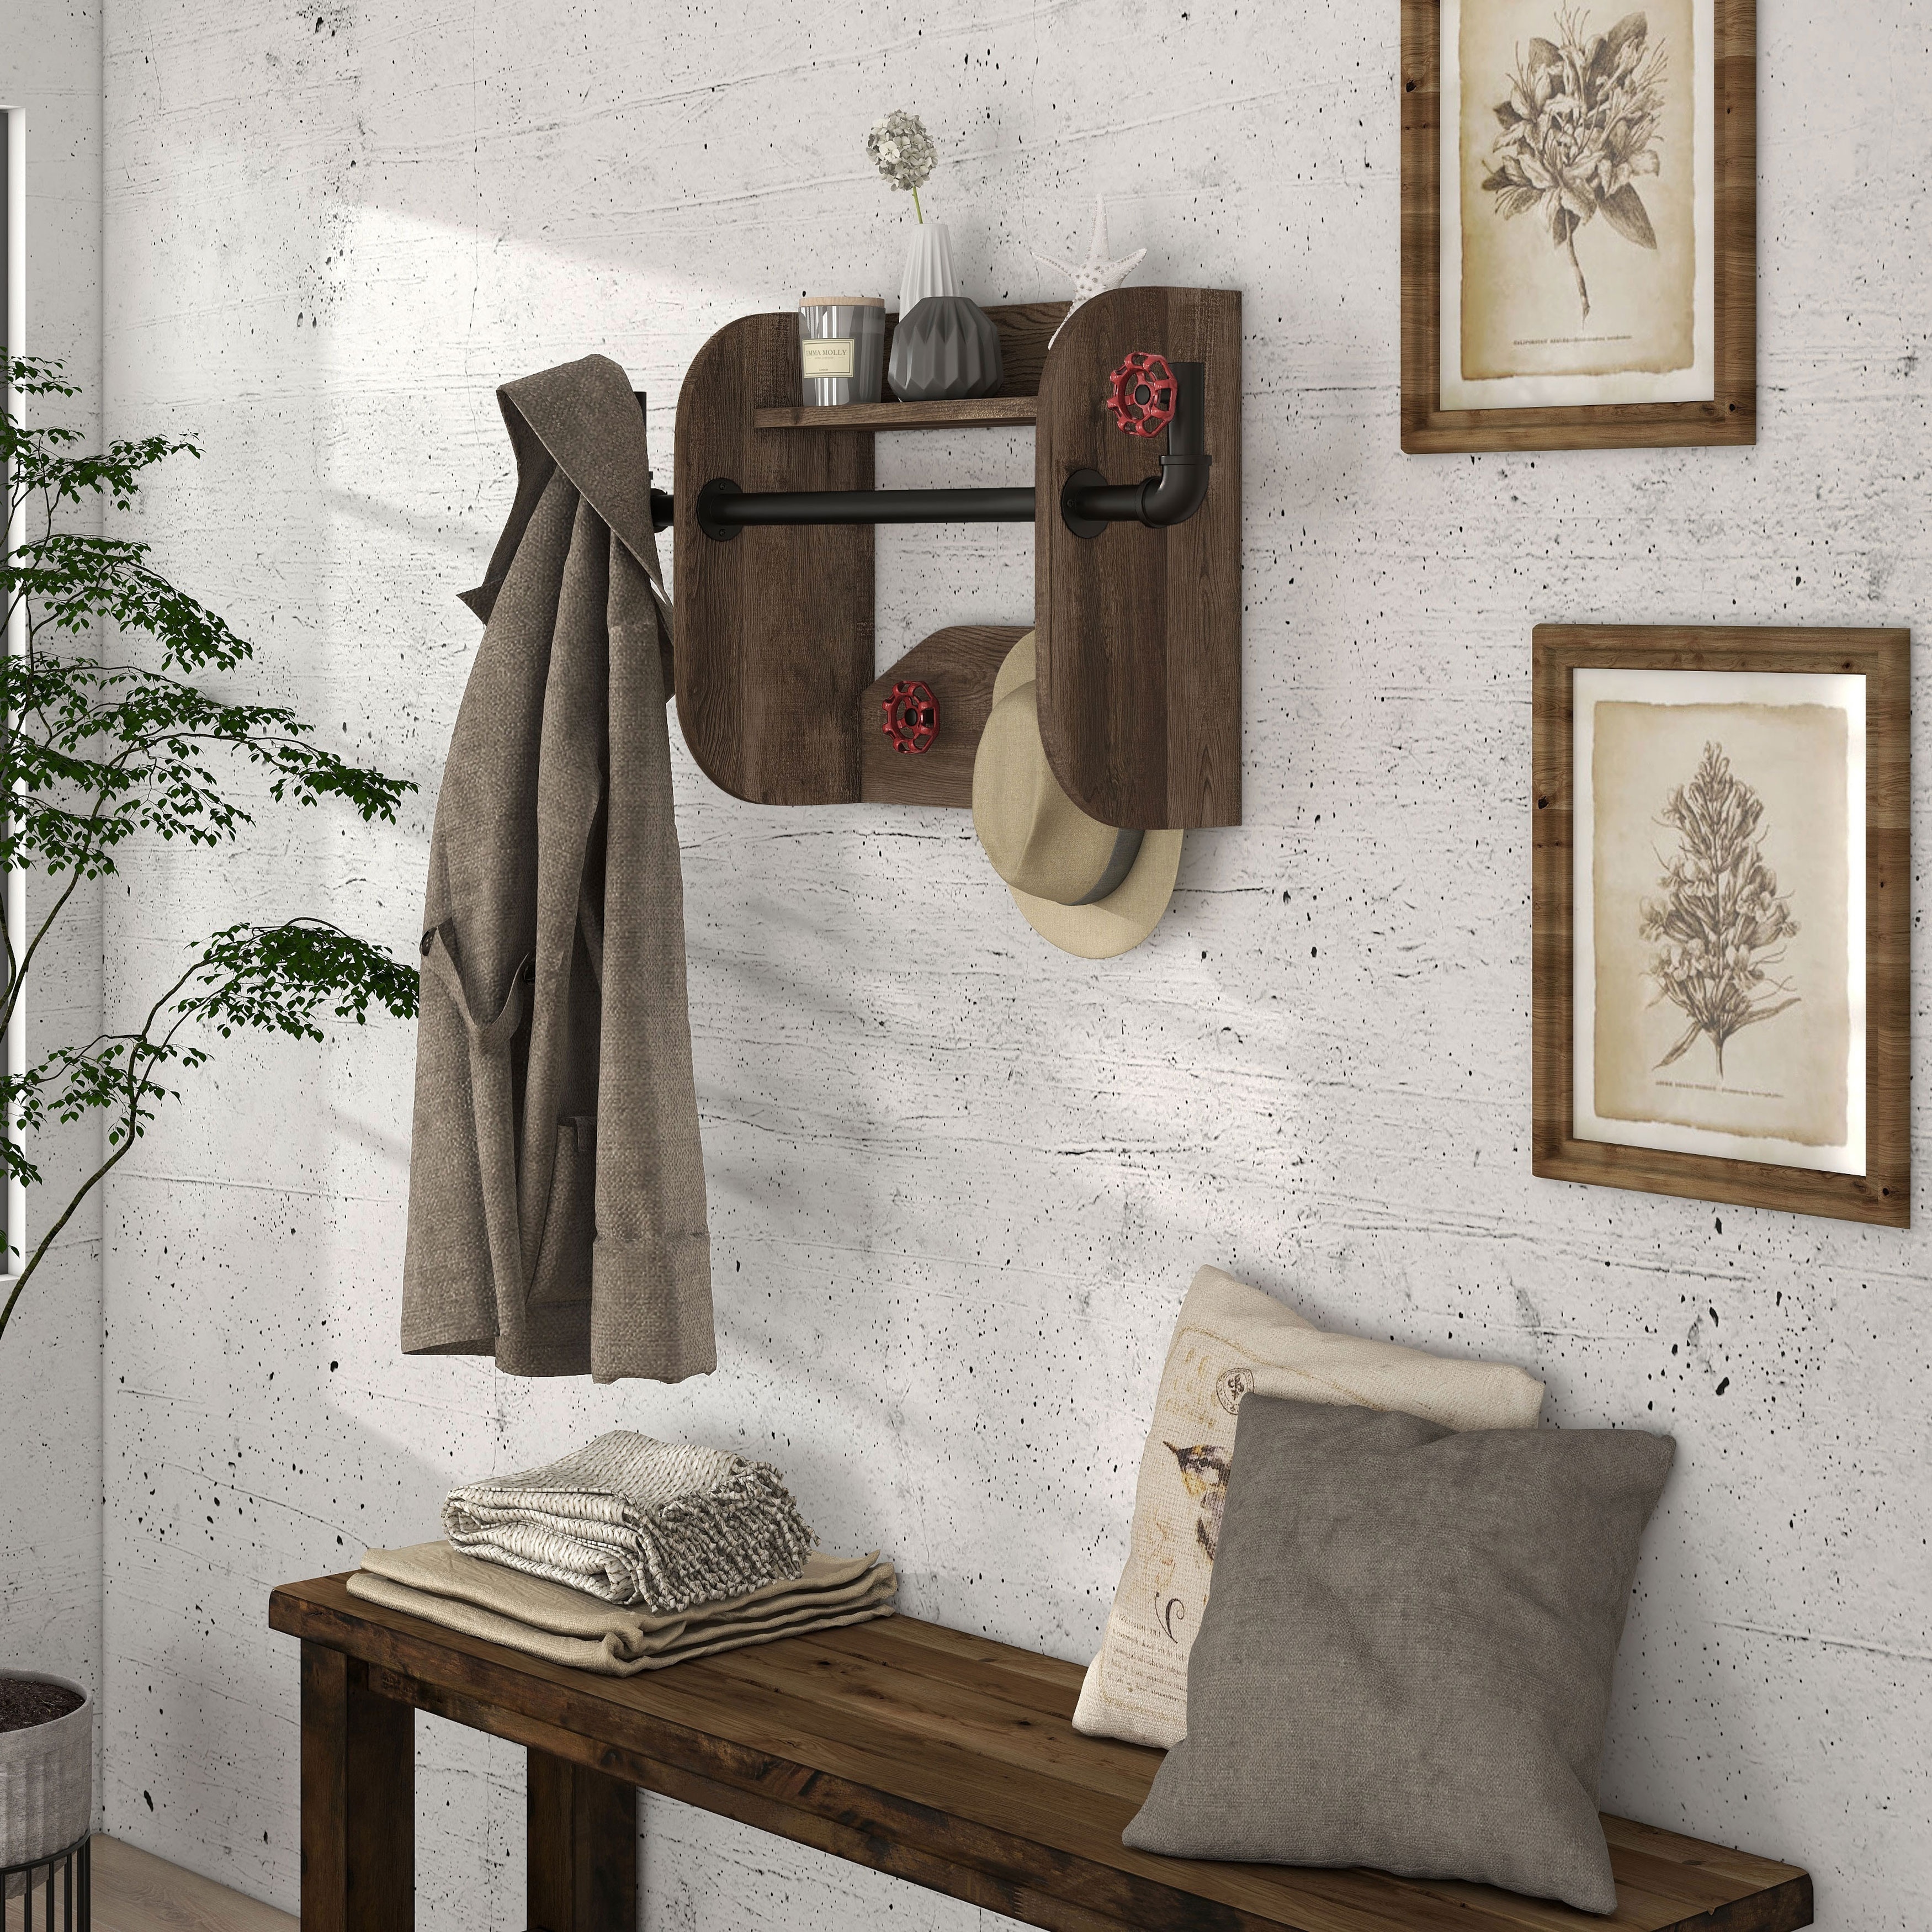 Danya B. Wall-Mounted Coat Rack with Shelf and 4 Metal Hooks, Grey Oak/White